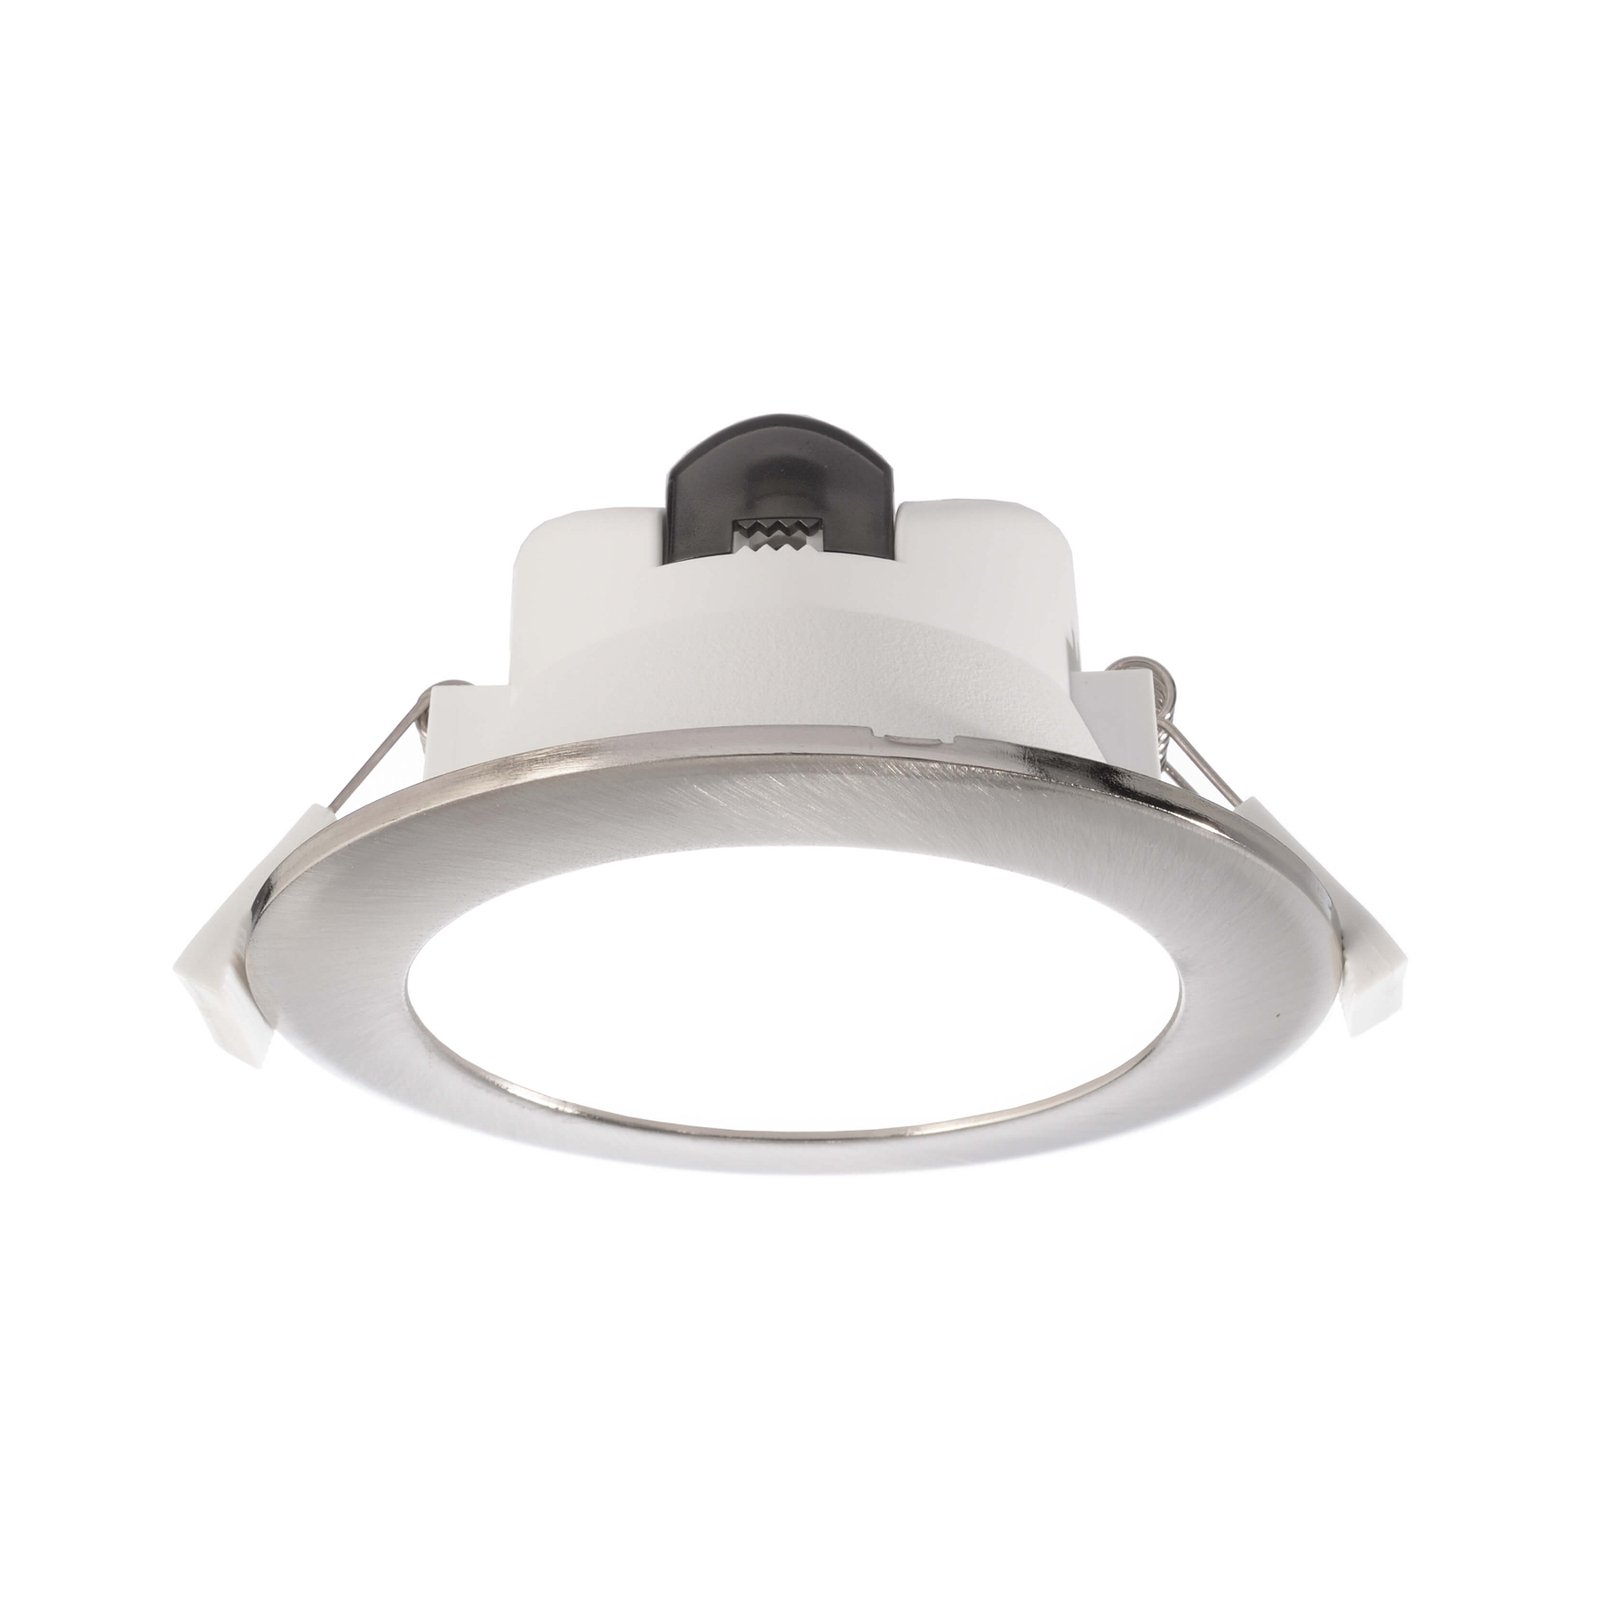 LED inbouwlamp Acrux 90, wit, Ø 11,3 cm